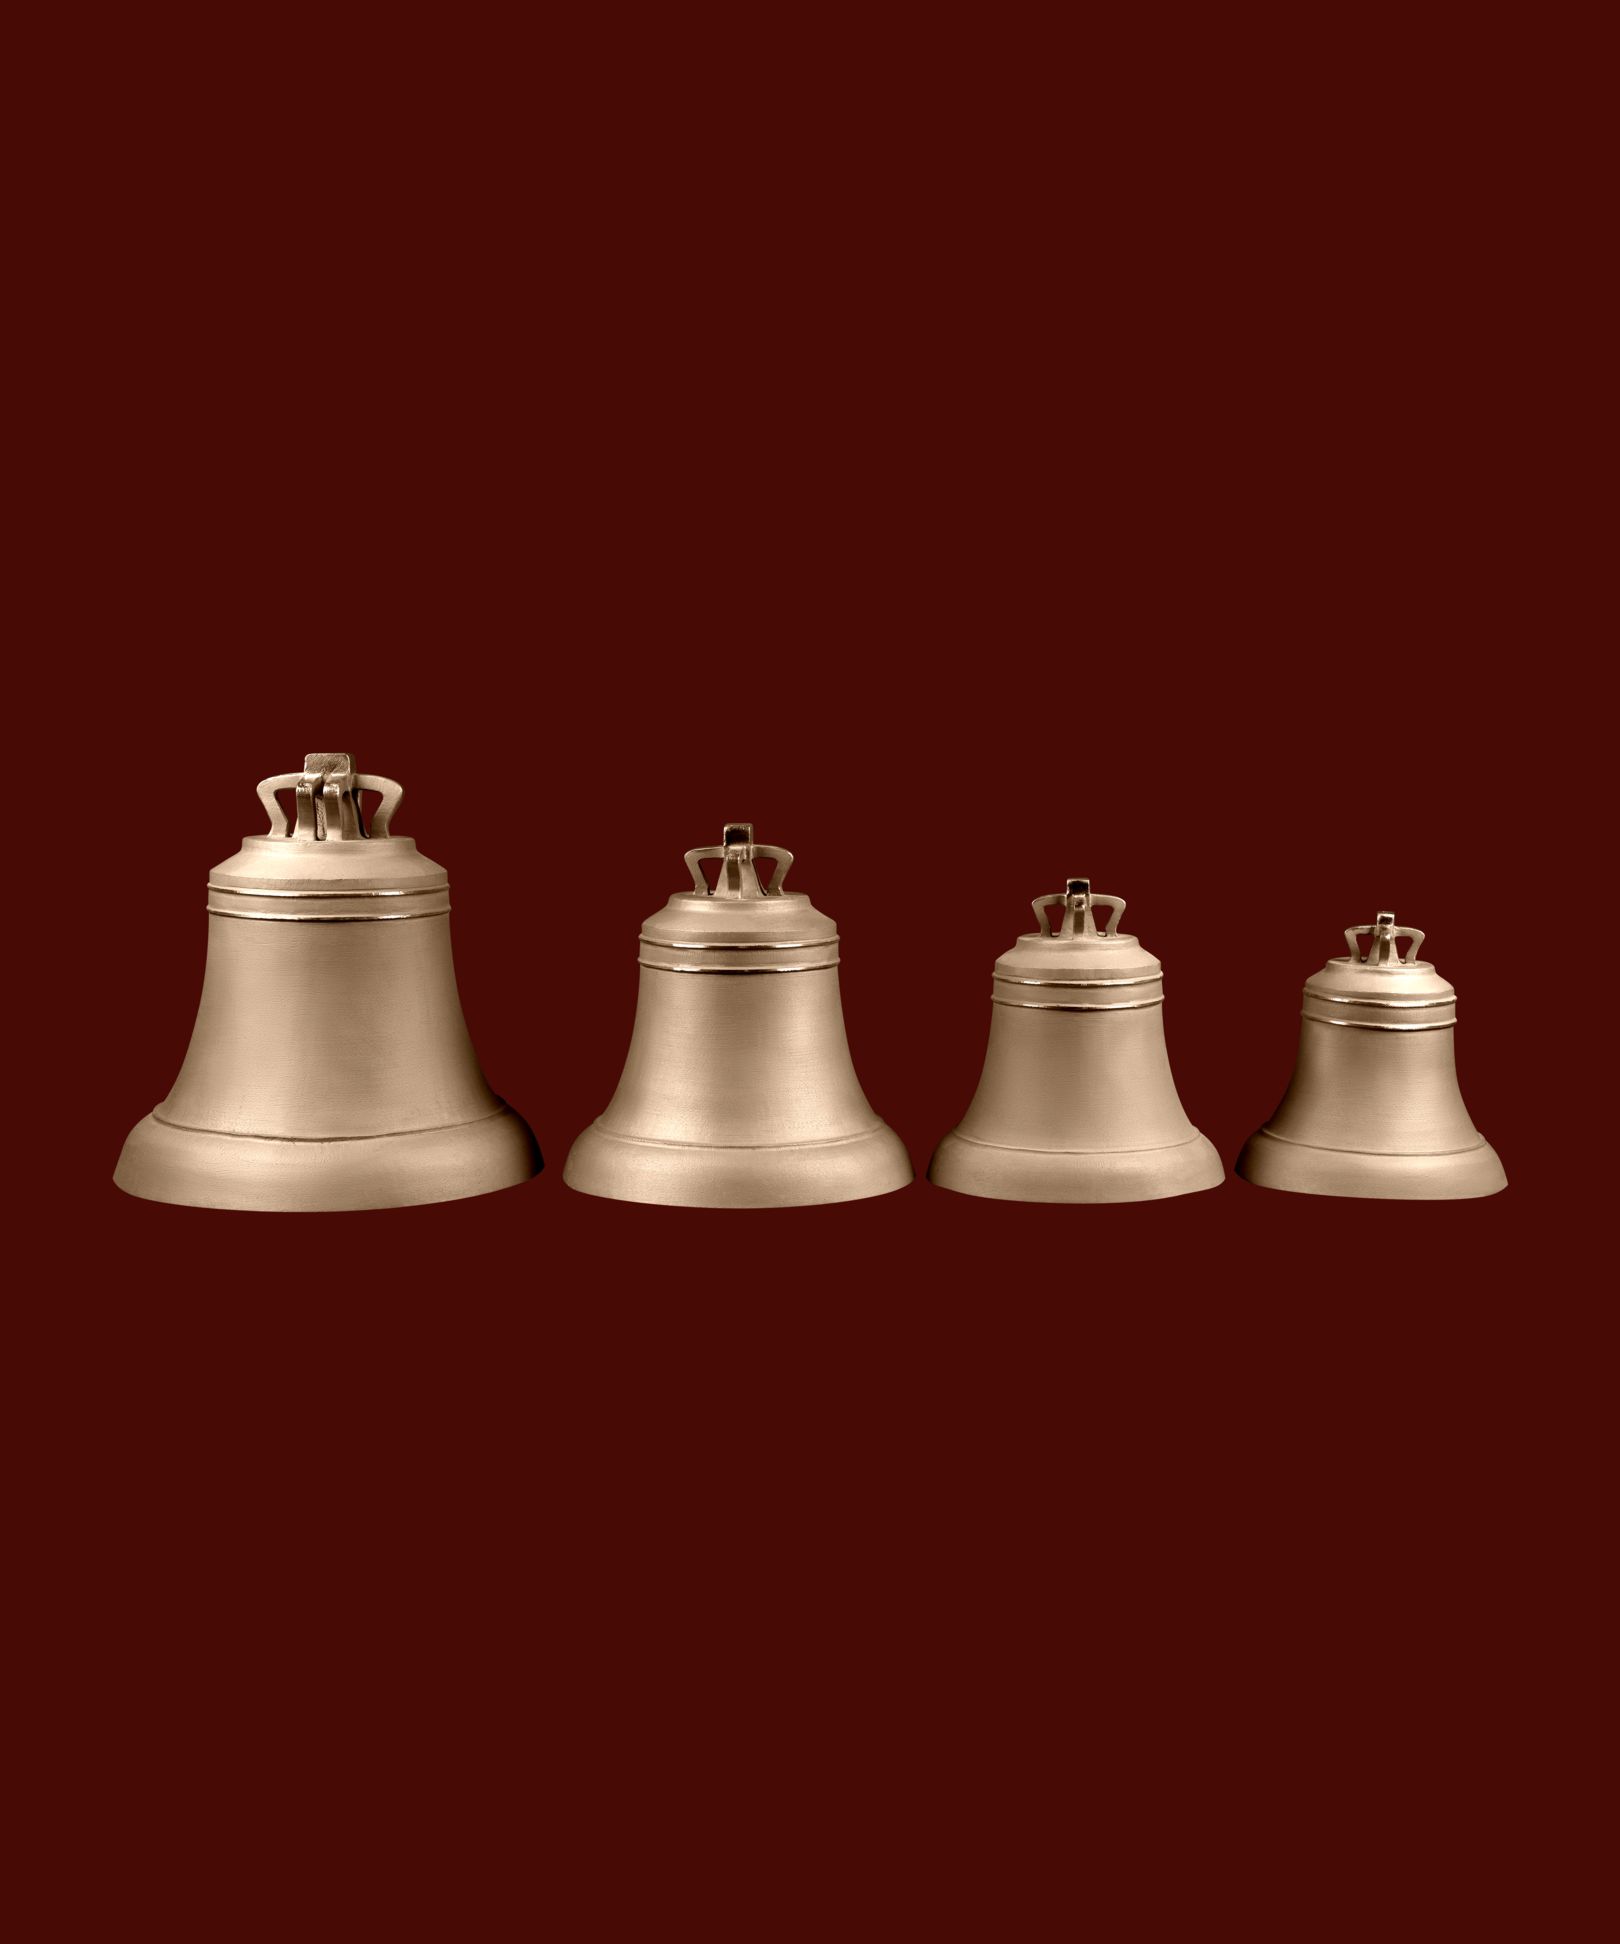 фото Набор №2 из 4-х "Монастырских" колоколов весом 8,6,5,4 кг в каталоге завода Литэкс